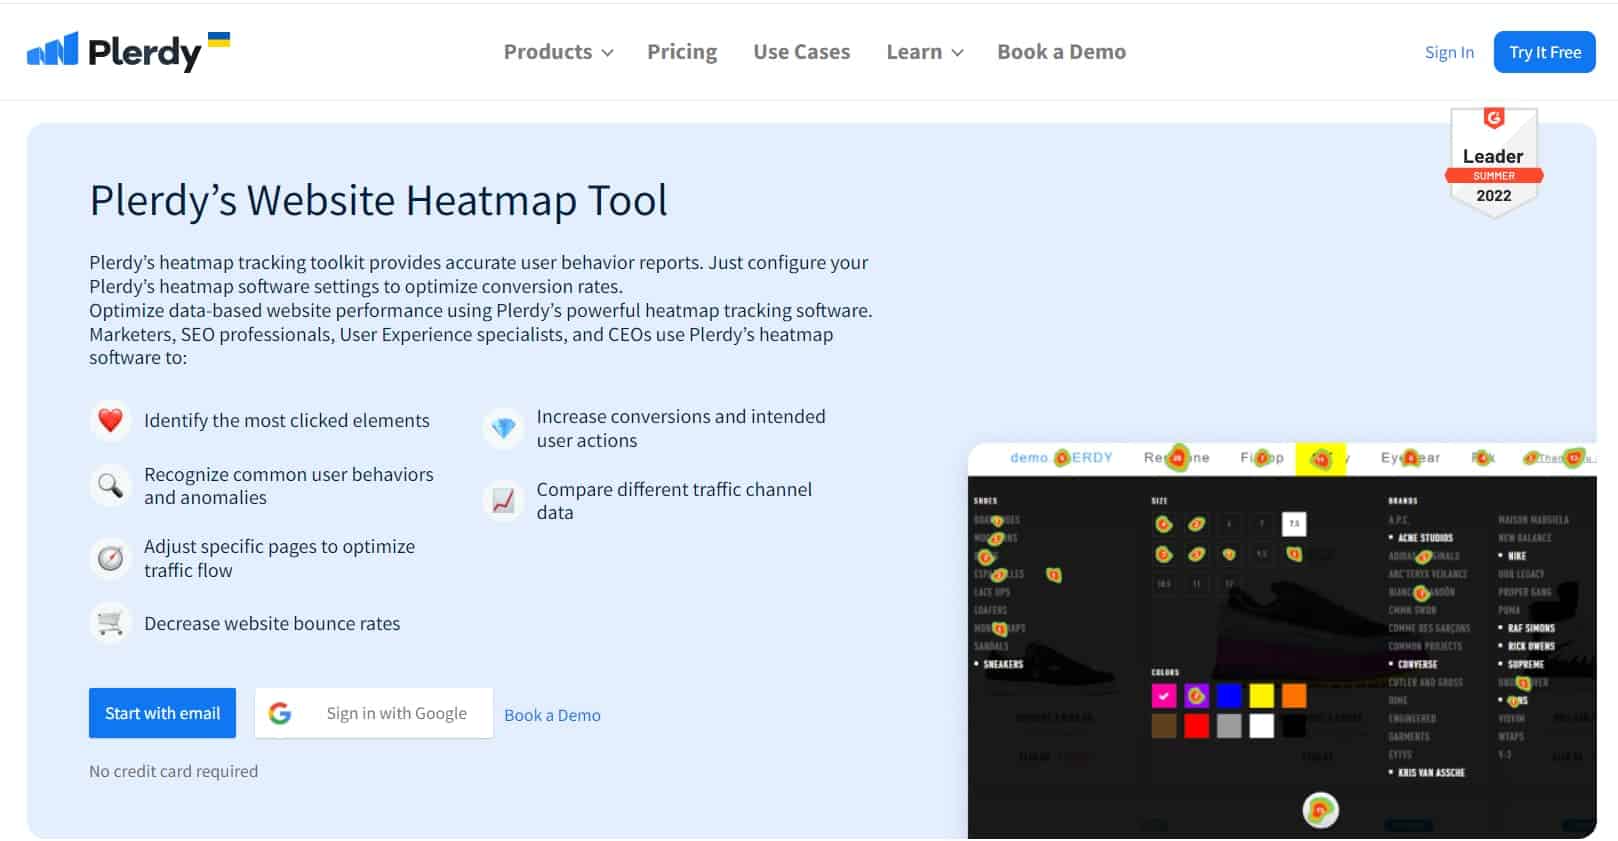 Heatmaps To Analyze Site's Traffic